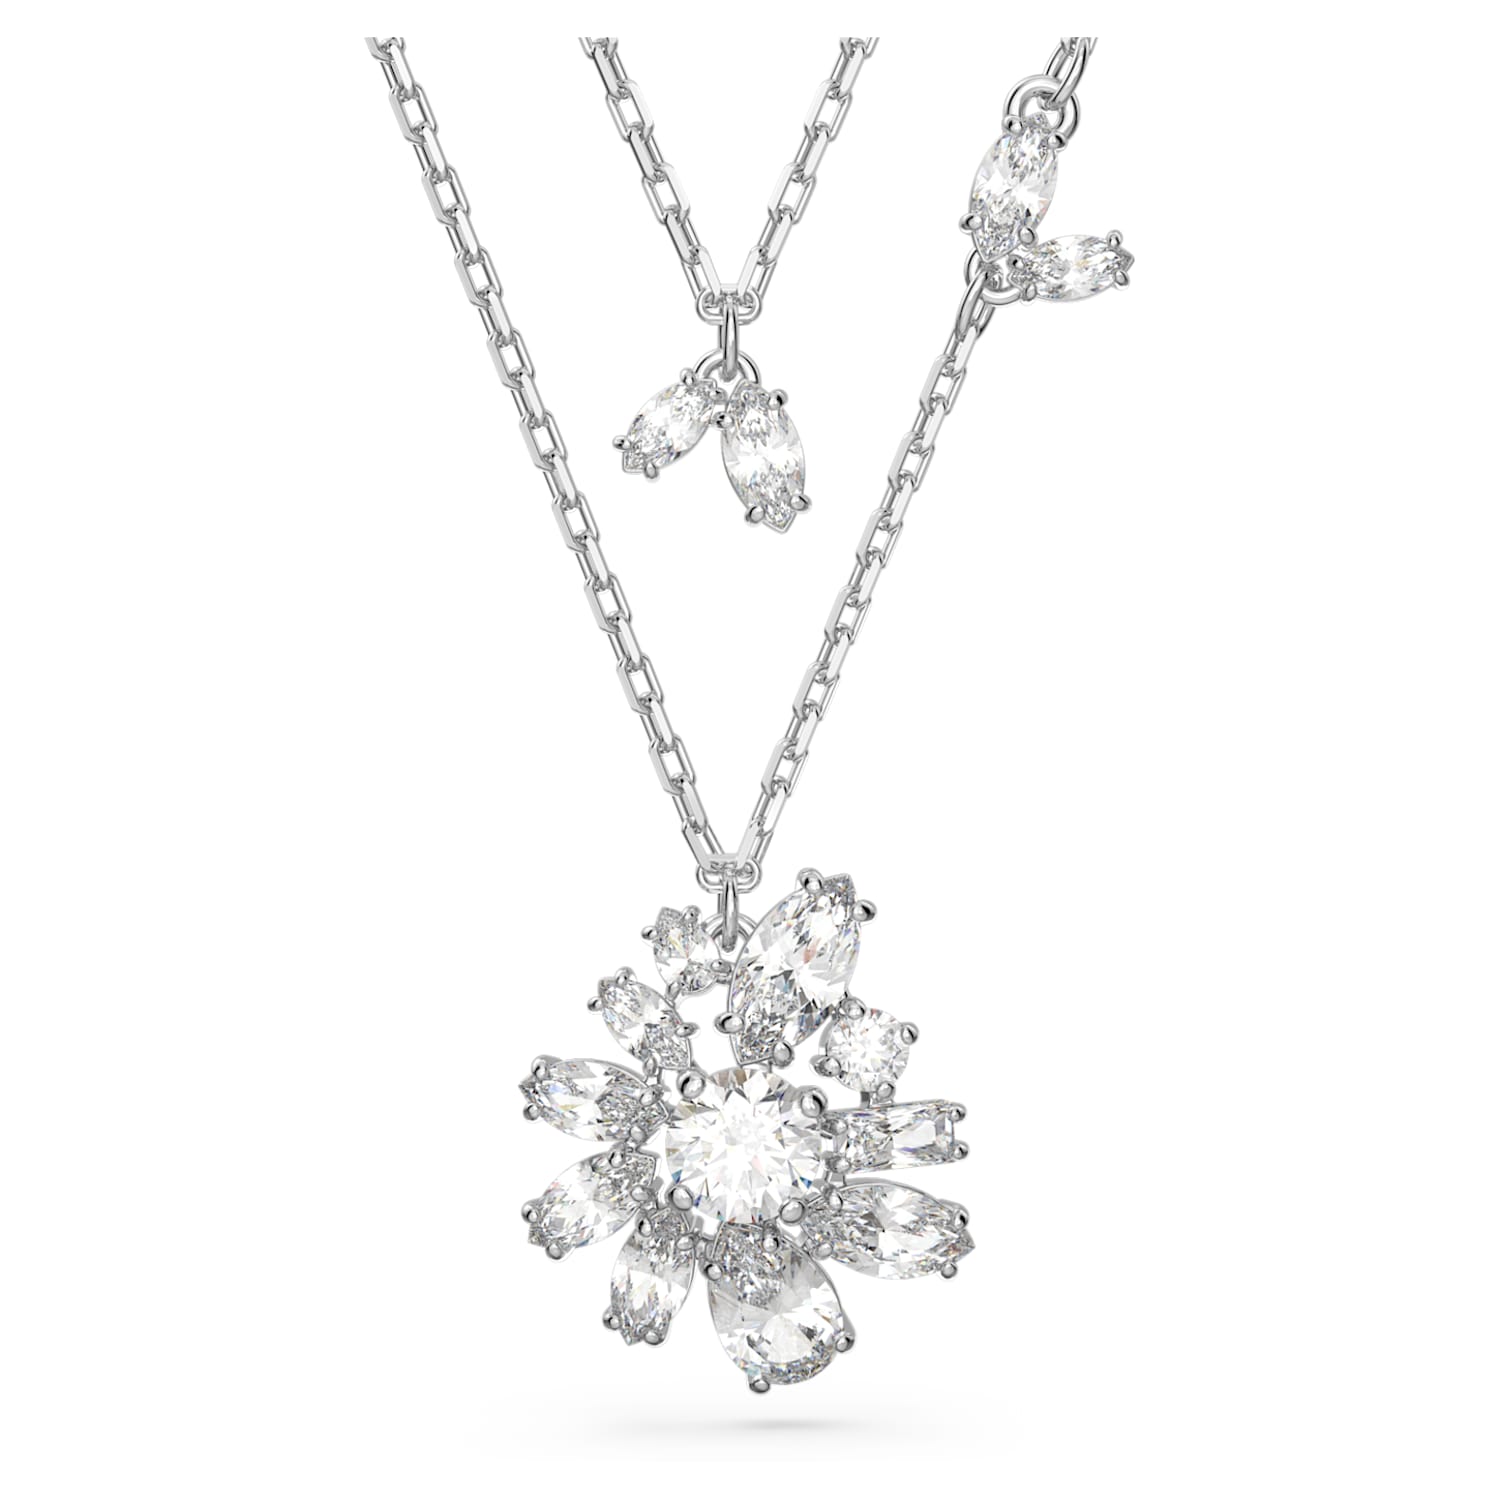 Swarovski Očarujúce náhrdelník s čírymi kryštálmi Gema 5644658